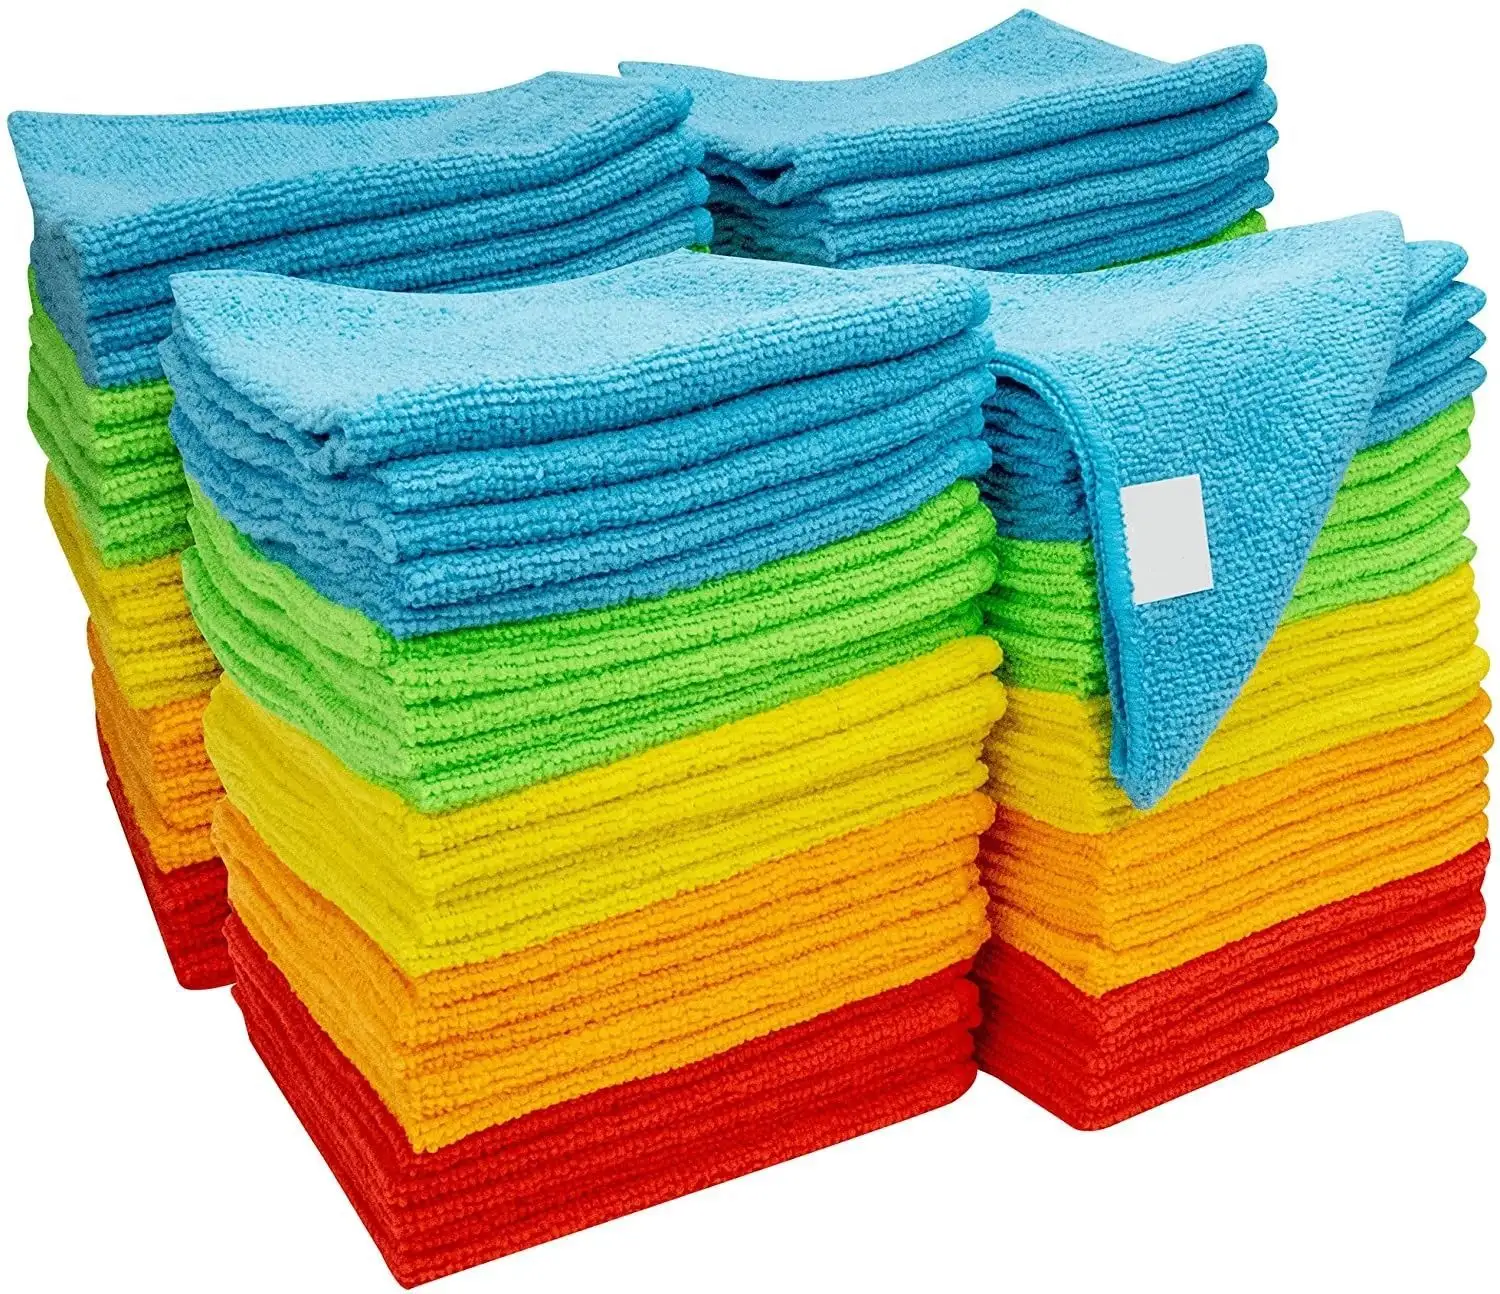 Pack 10 In 40X40Cm 200gsm Schoonmaakartikelen Microvezel Doeken Handdoek Roze Blauw Geel Groen Reiniging Handdoek Microfiber Doek in Buck